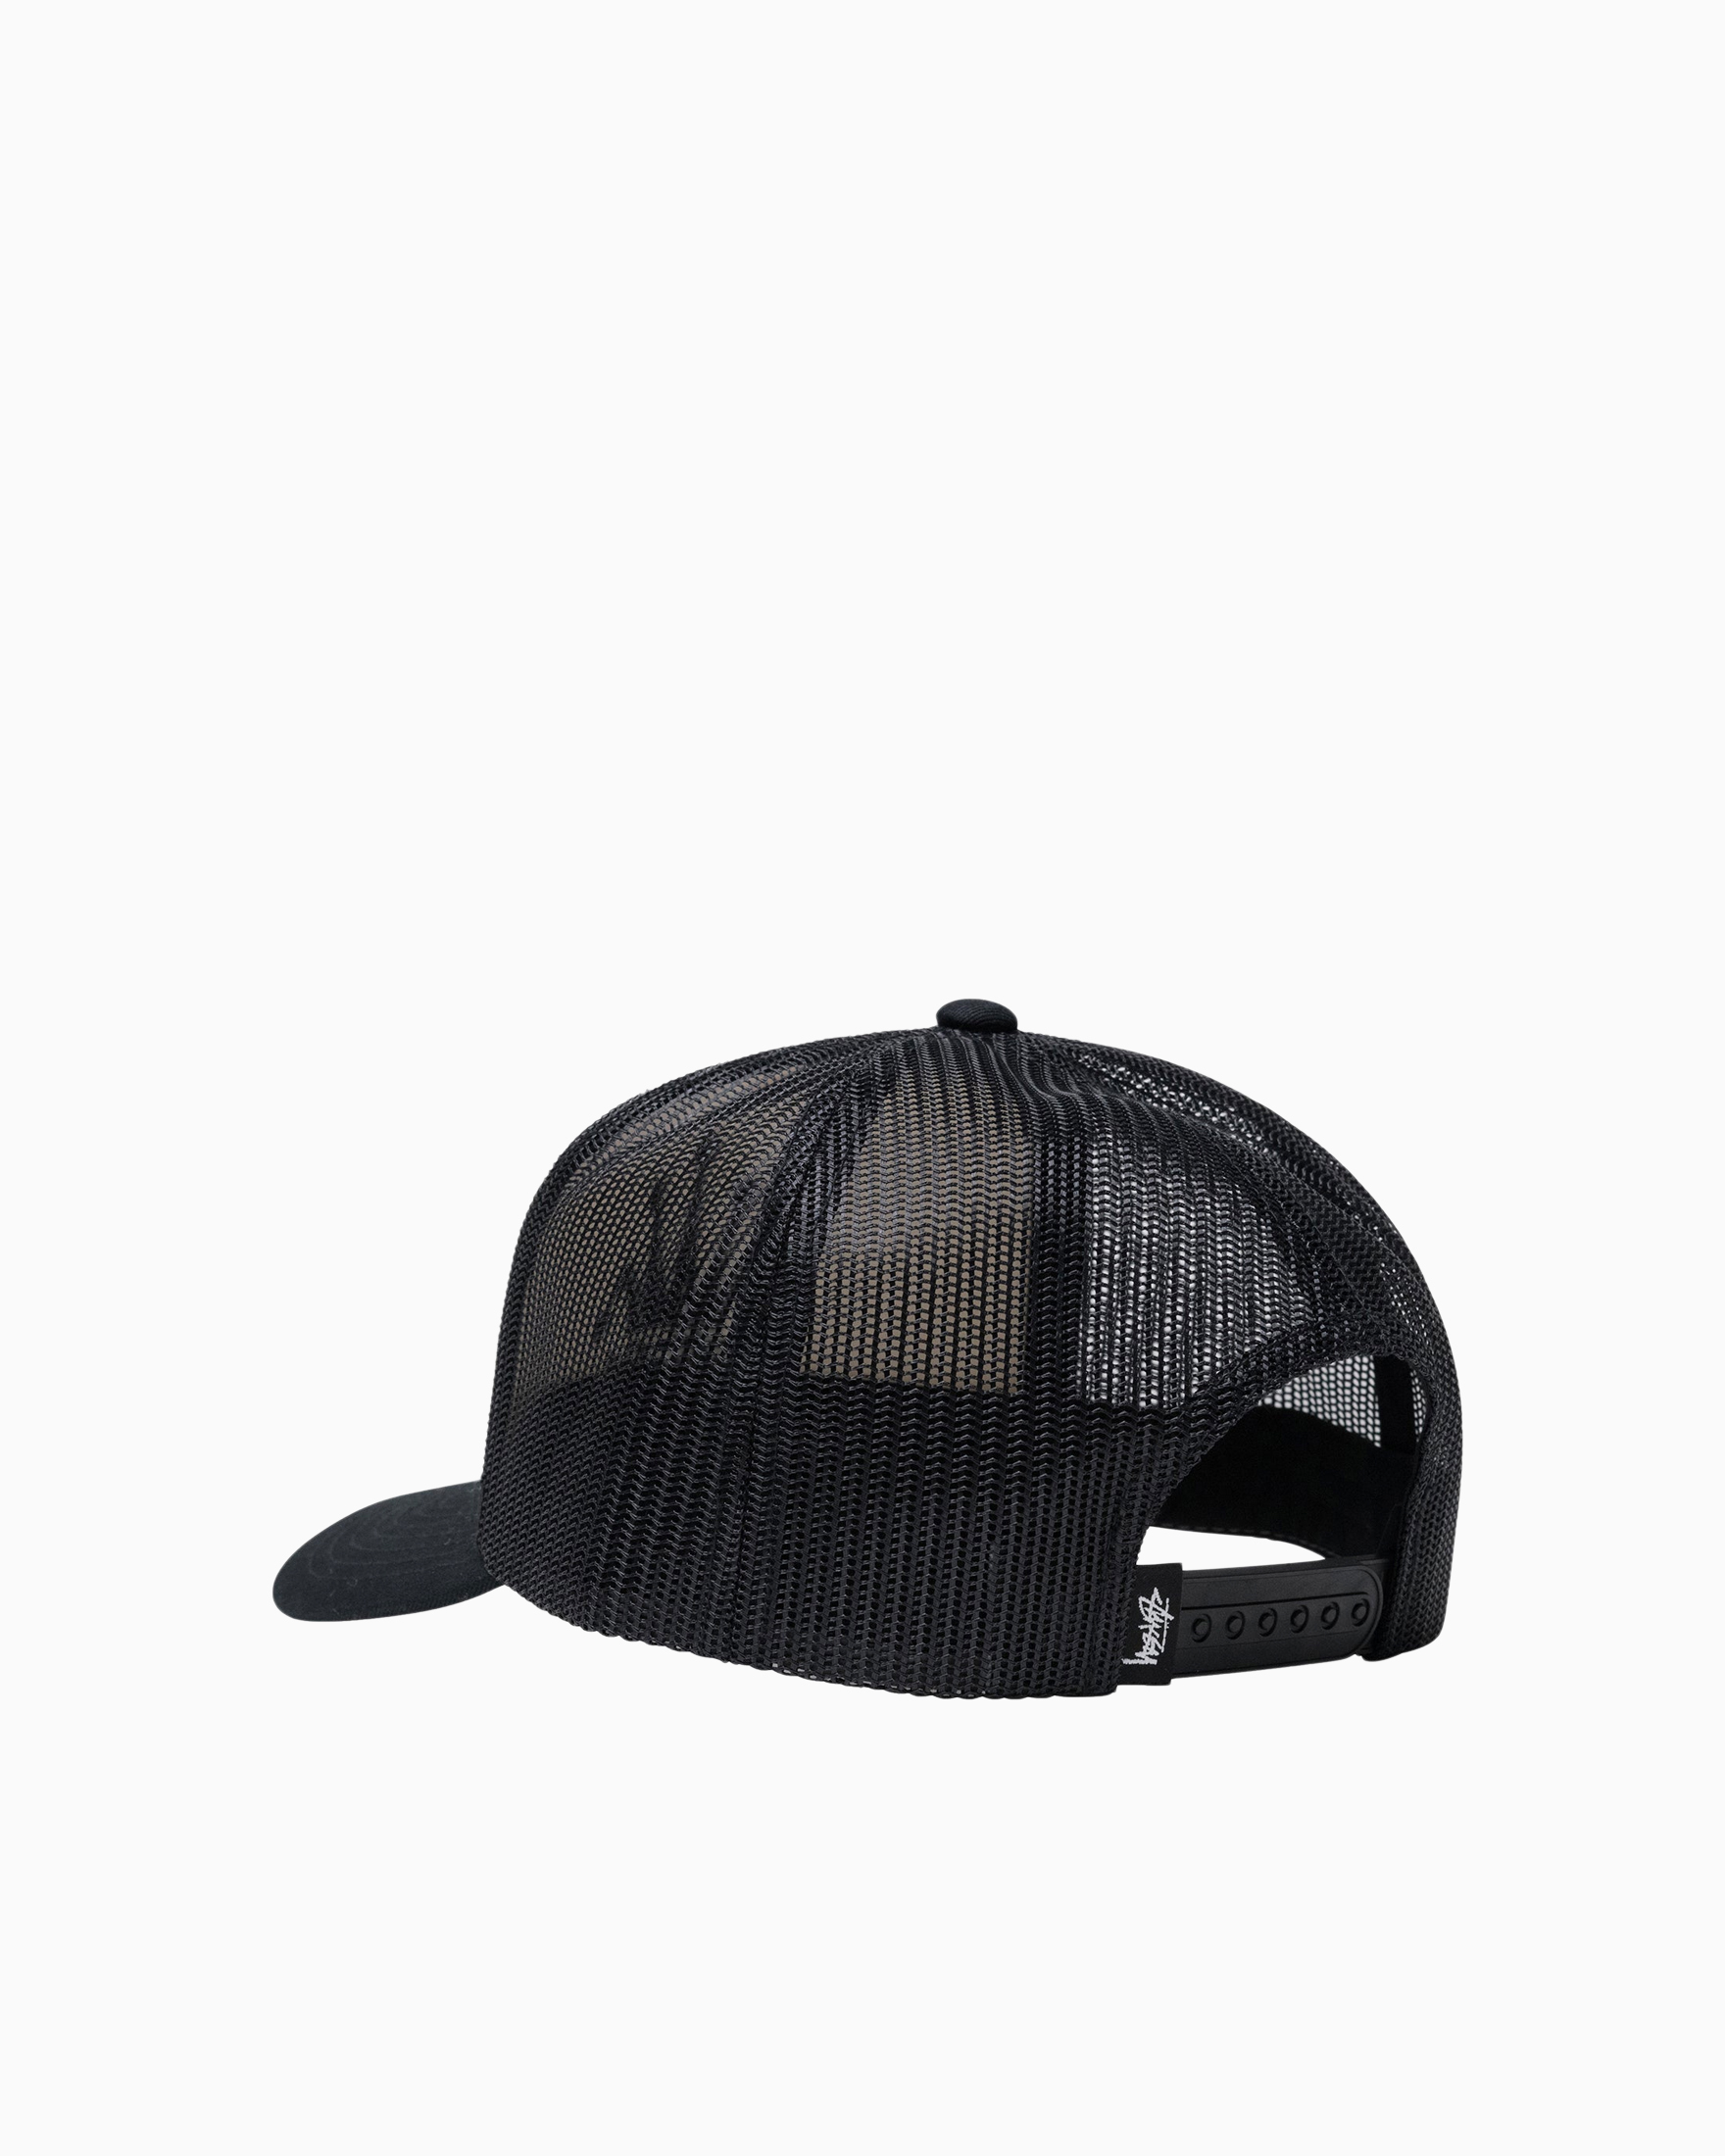 Crown Stock Trucker Cap Stüssy Headwear Caps Black